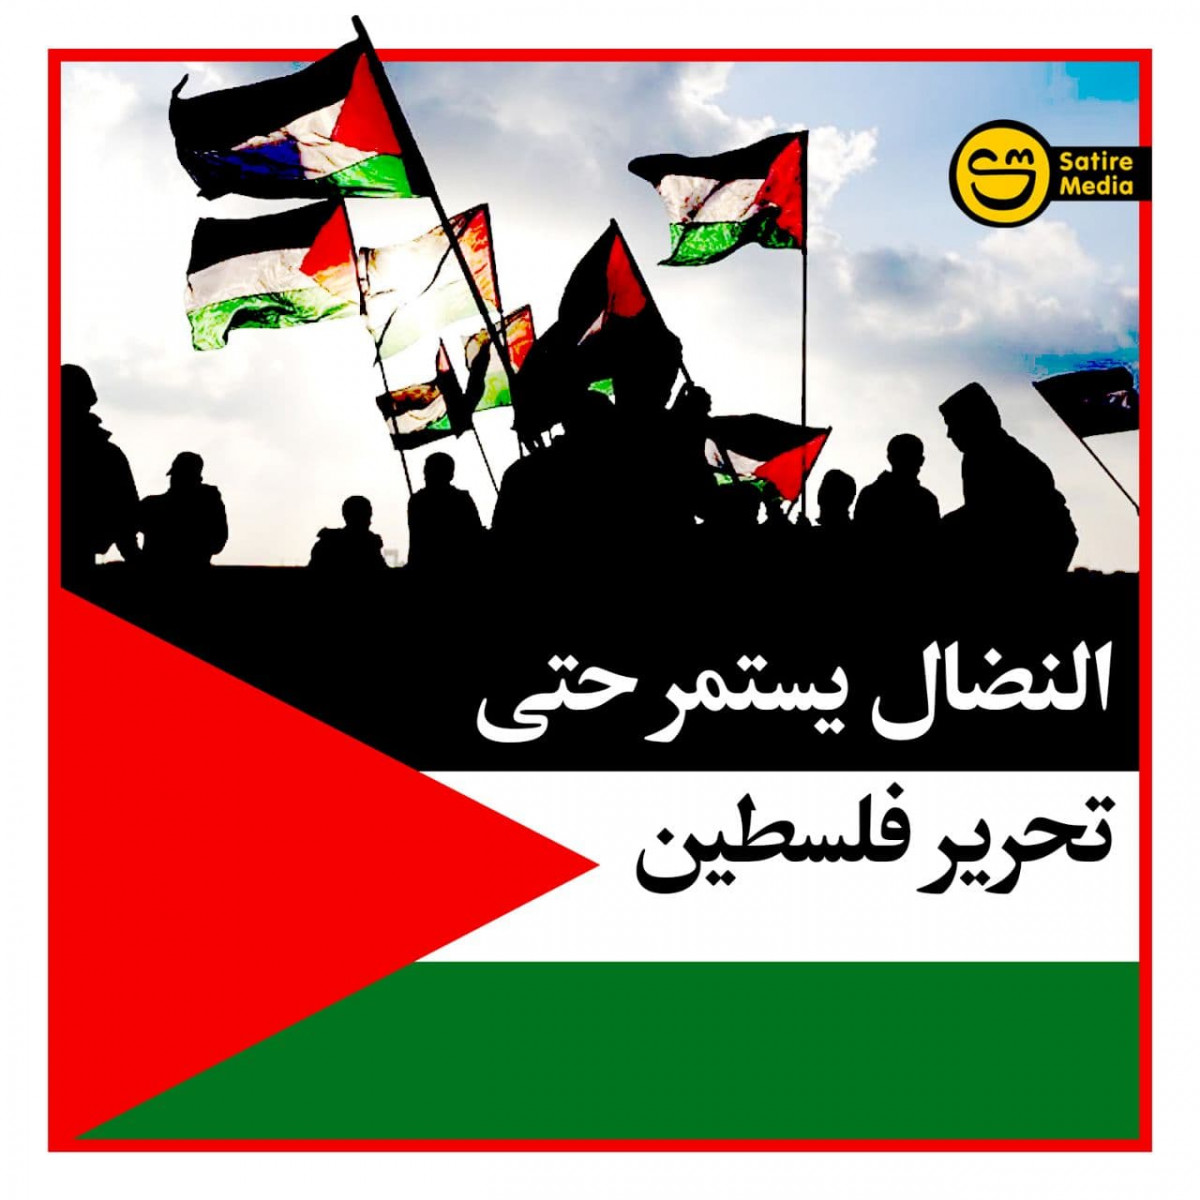 النضال يستمر حتى تحرير فلسطين